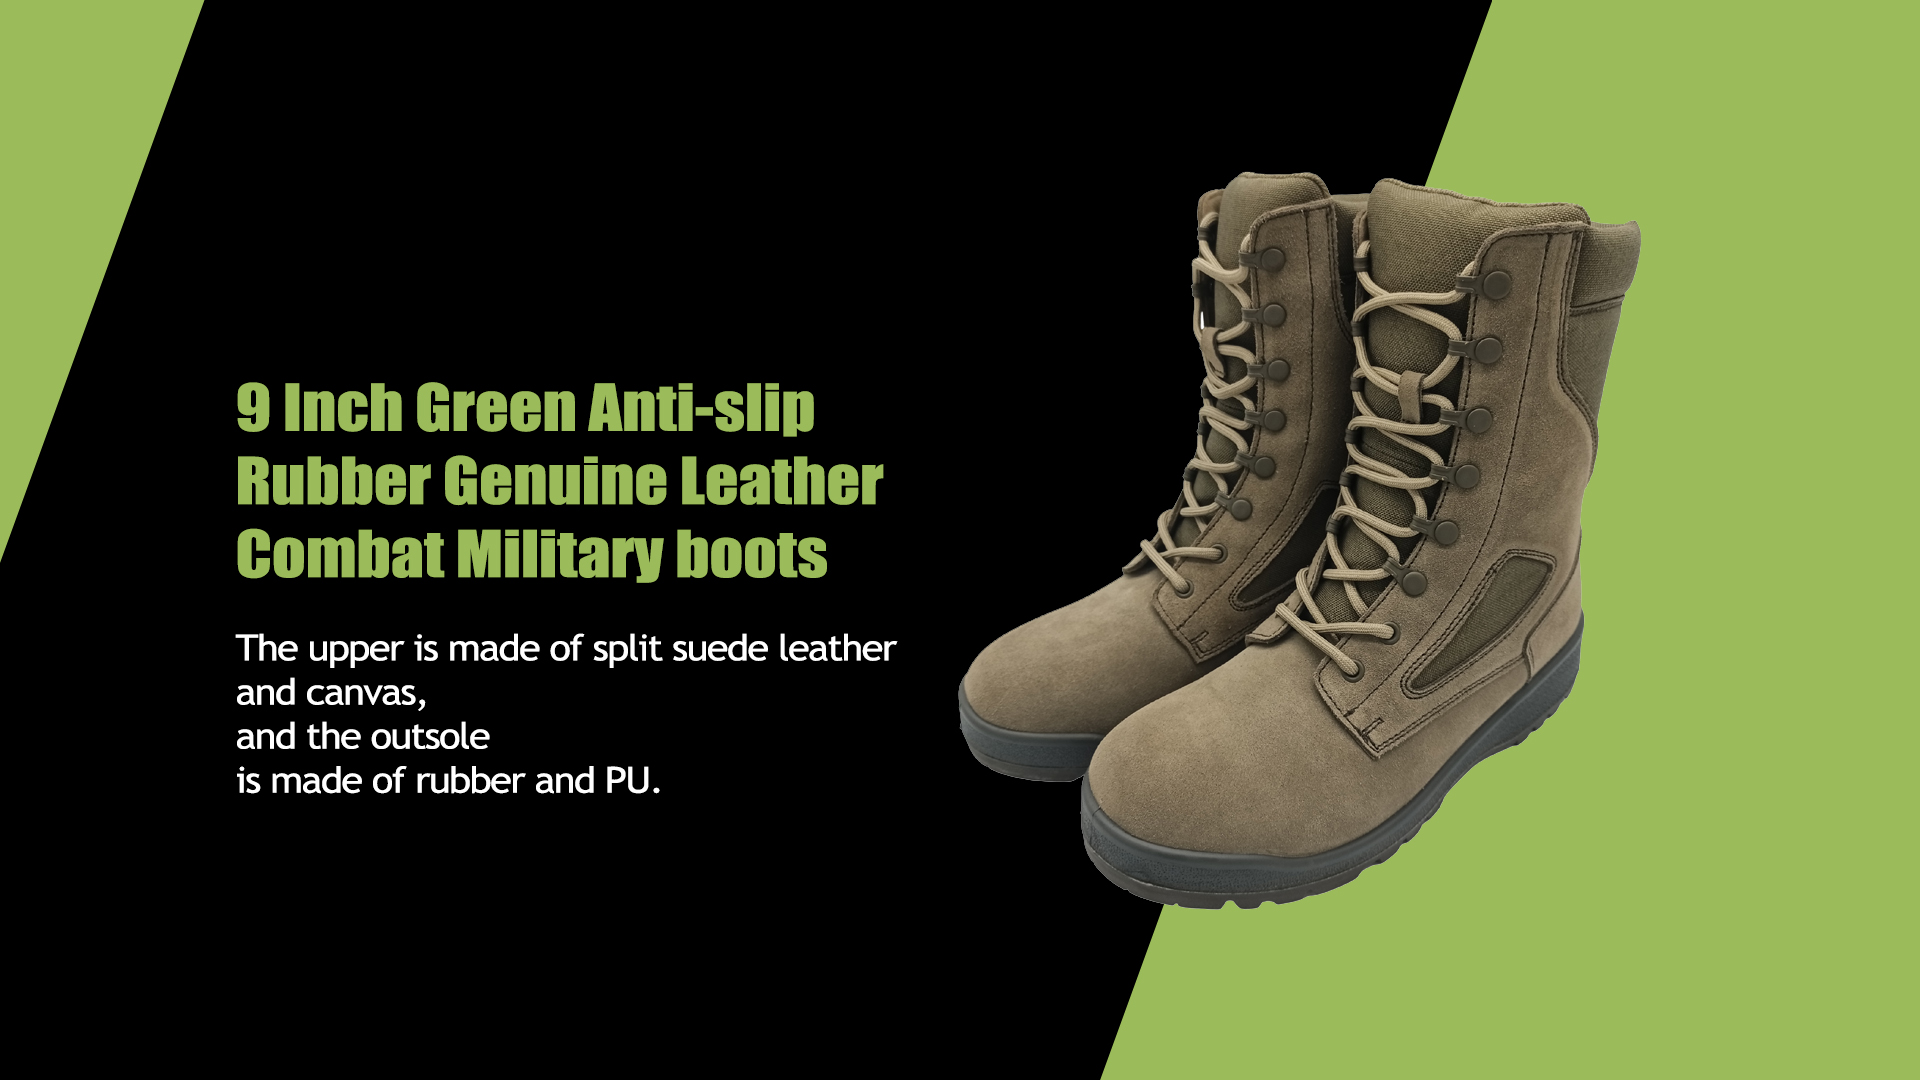 Botas militares de combate de cuero genuino de goma antideslizante verde de 9 pulgadas